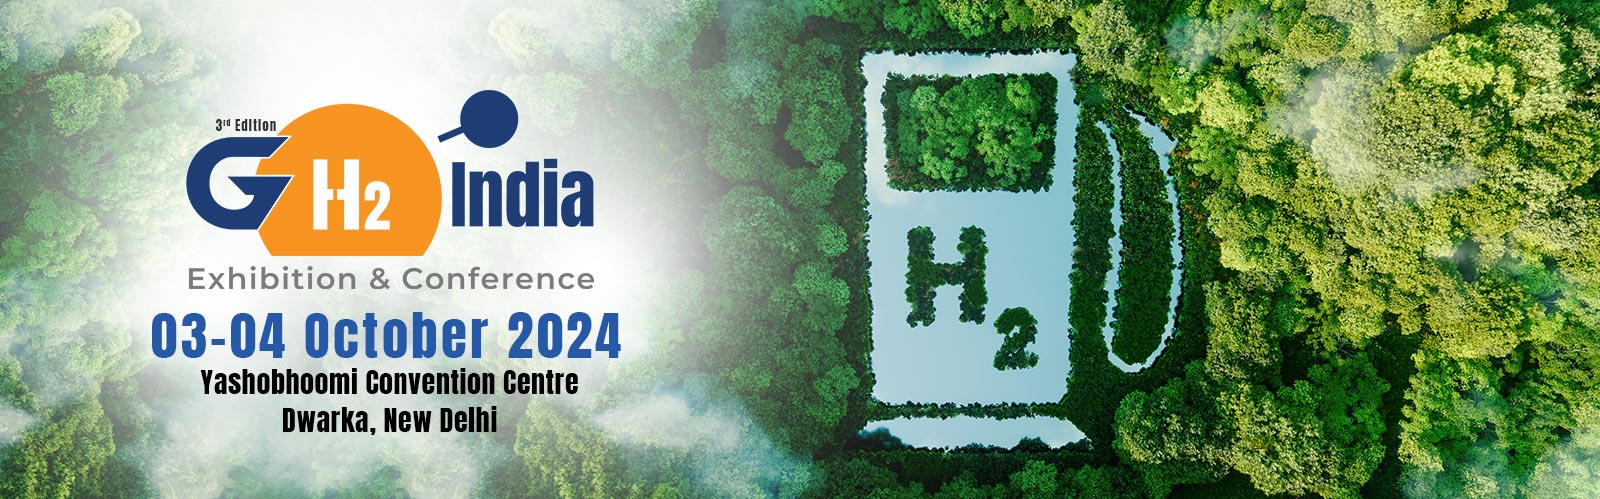 Green Hydrogen Summit 2022